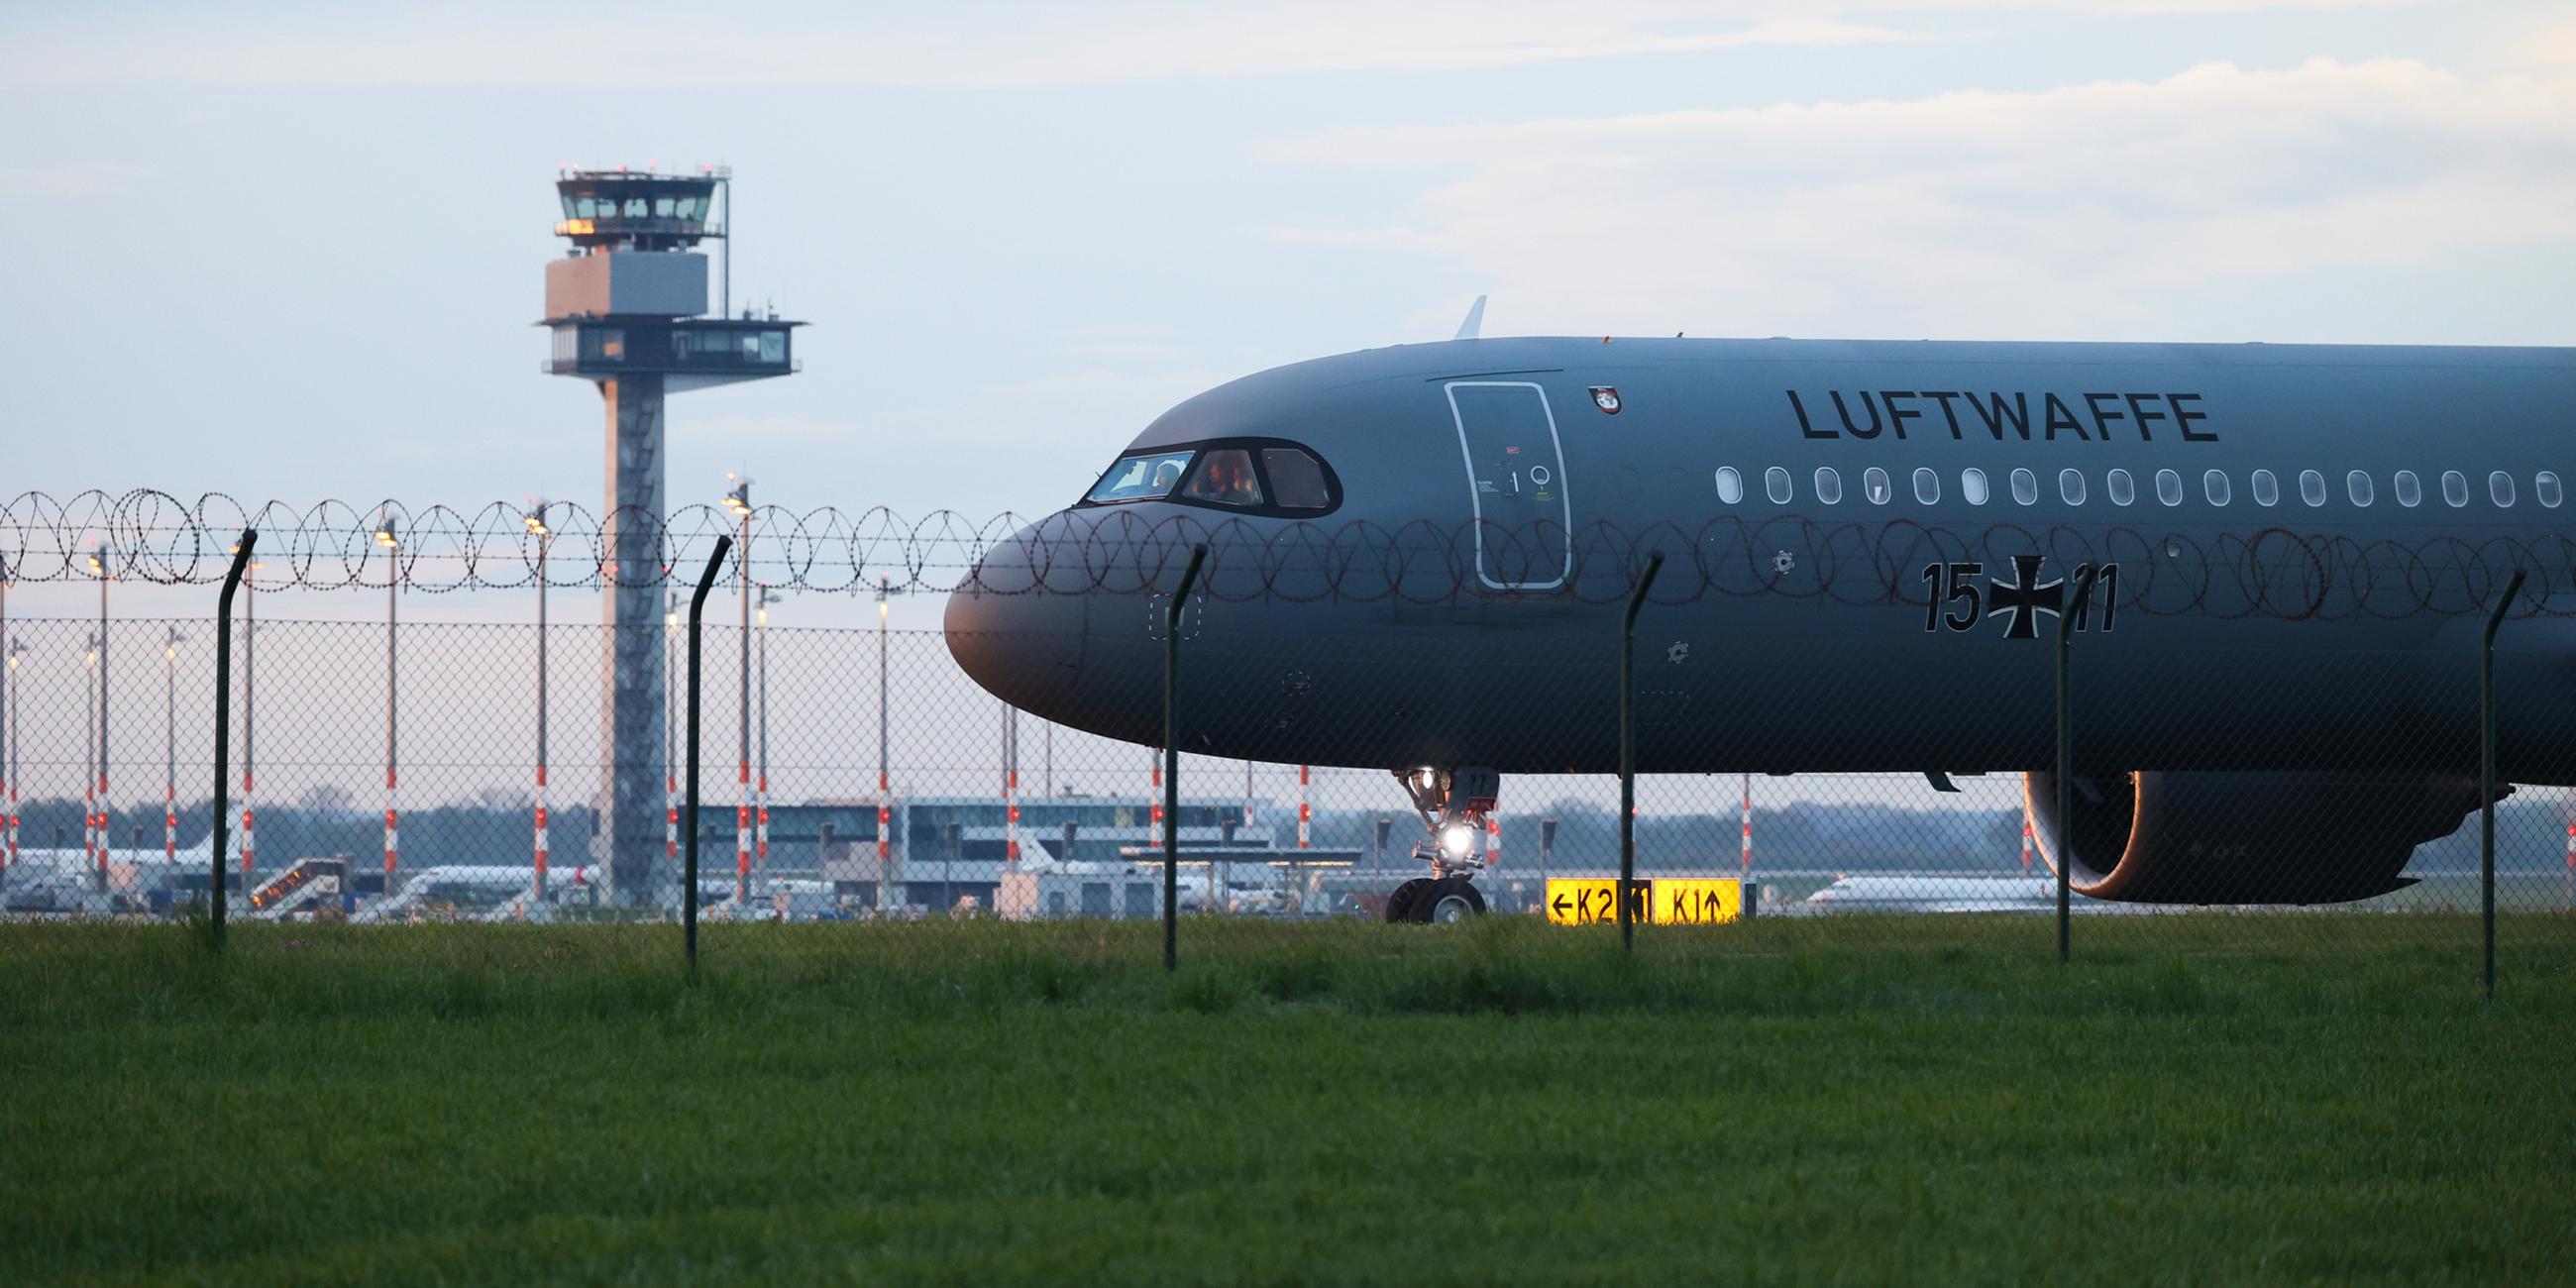 Ein Airbus der Luftwaffe landet mit aus dem Sudan evakuierten Bundesbürgern auf dem Flughafen BER